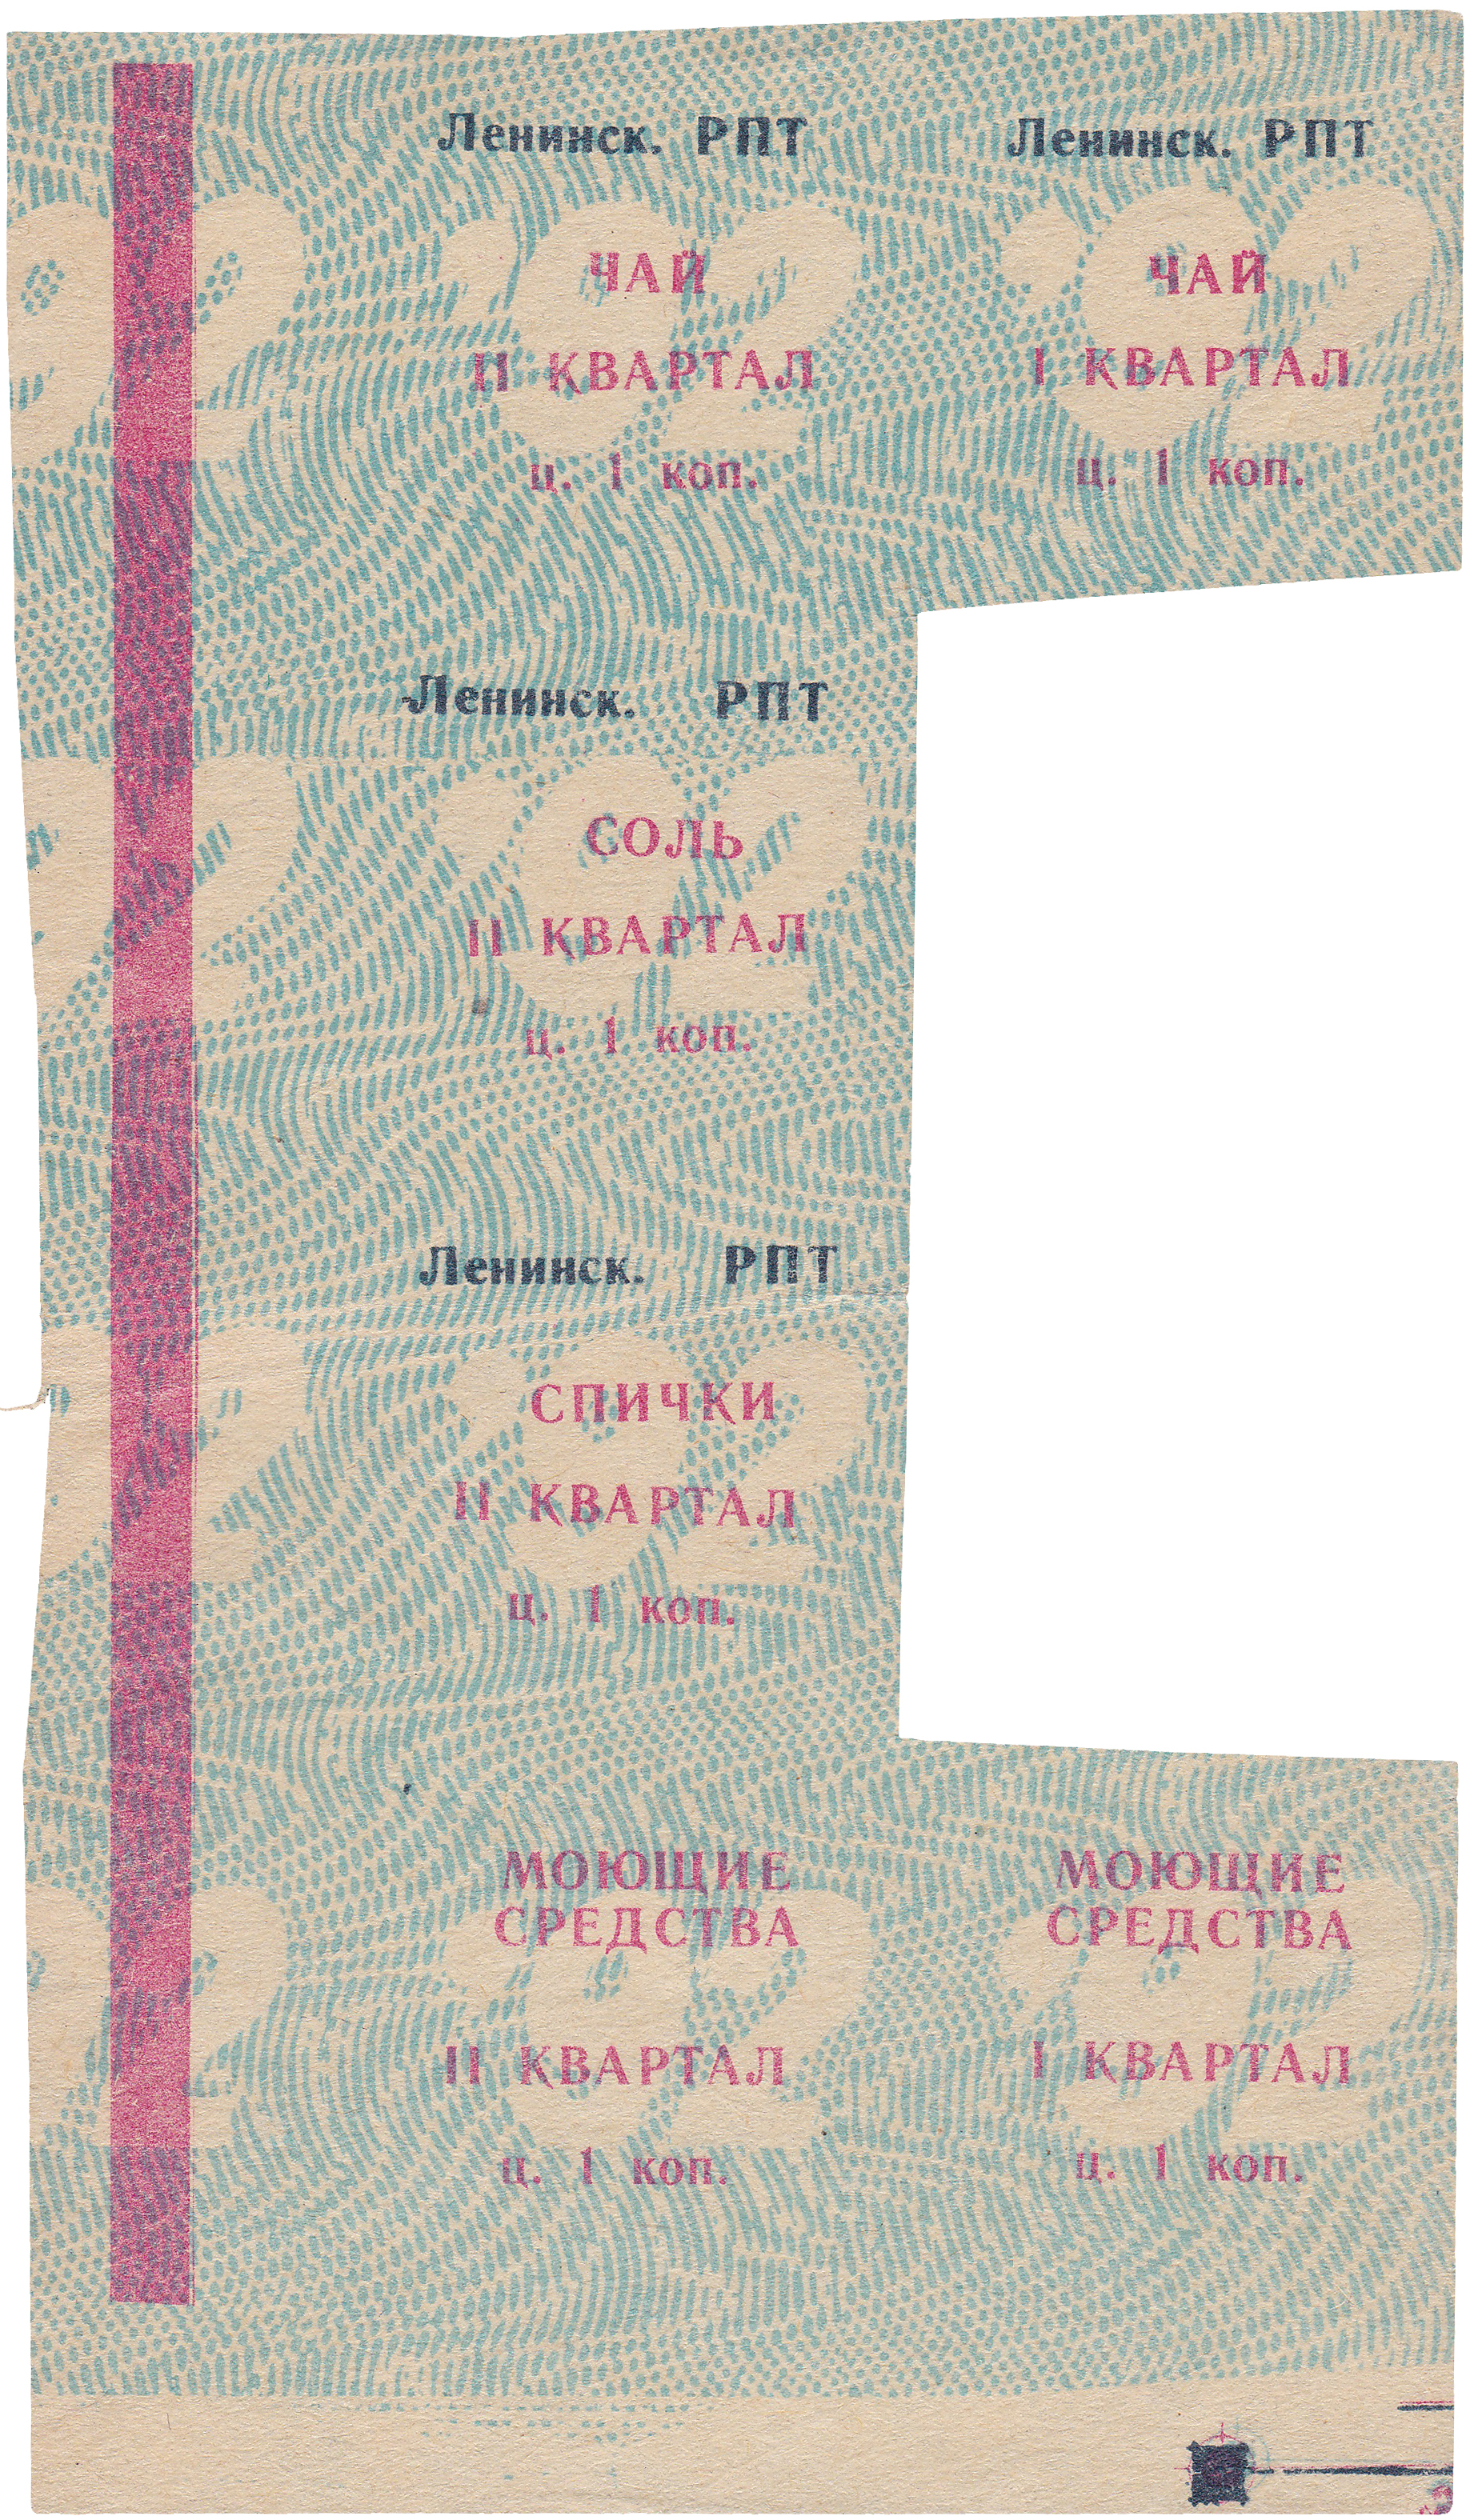 Талон (карточка) 1 Копейка 1992 год. Ижевск. Ленинский РПТ